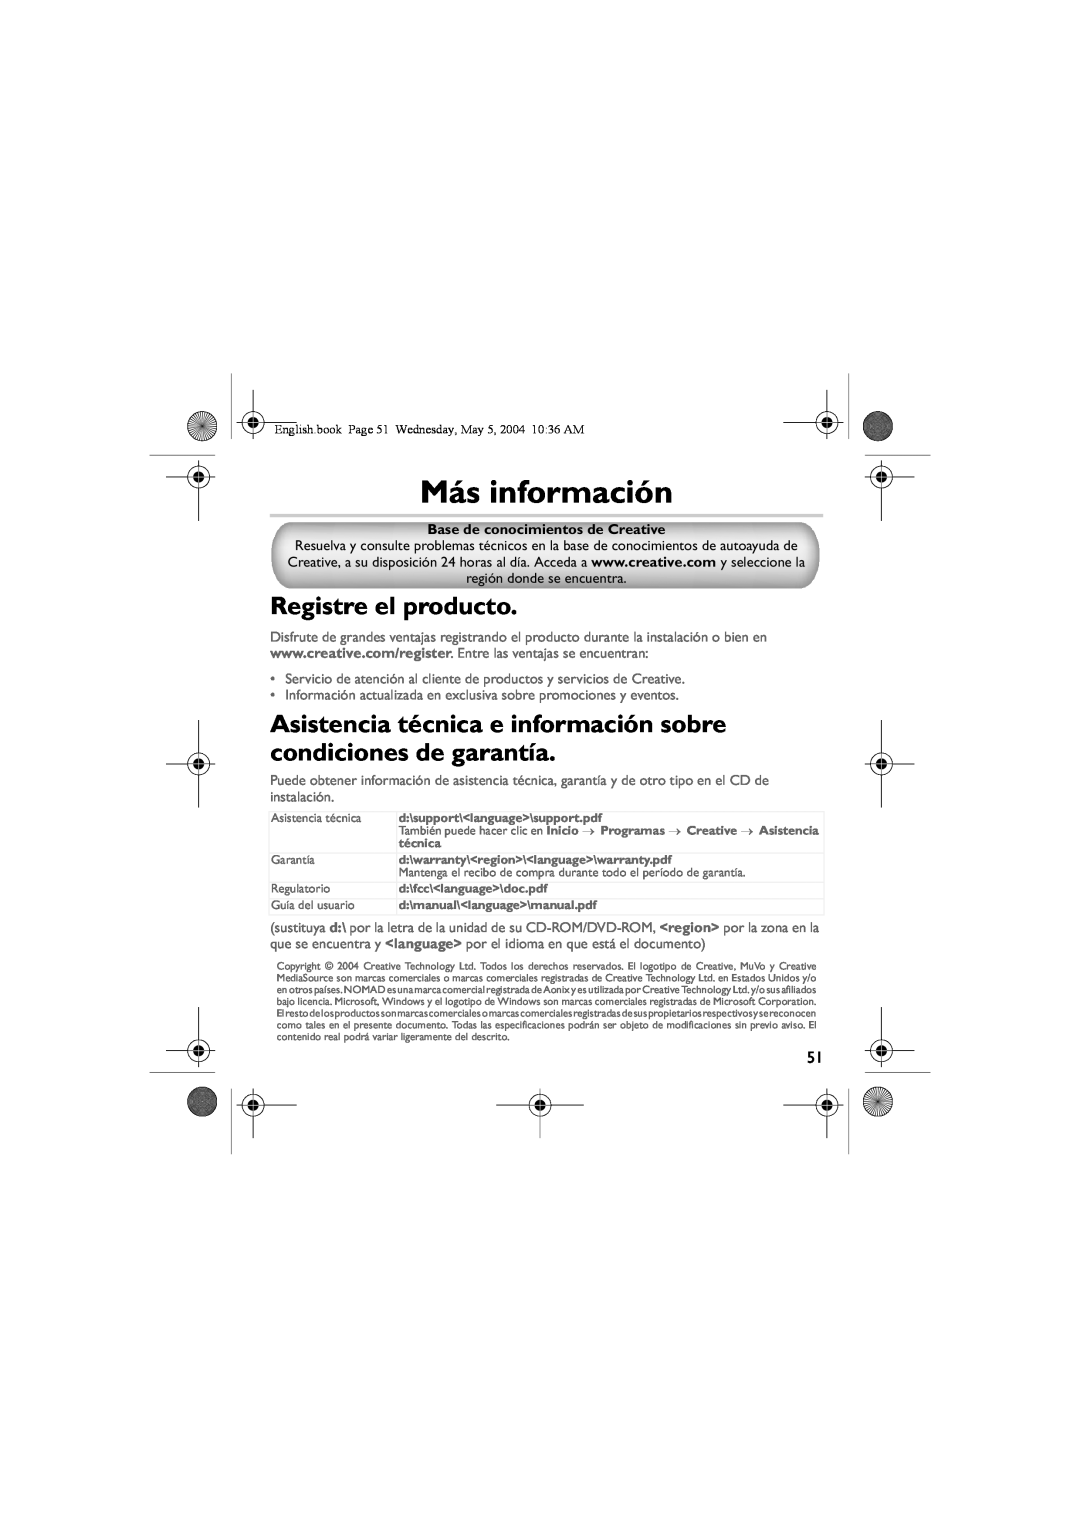 Musica CD Player Más información, Registre el producto, Asistencia técnica e información sobre condiciones de garantía 